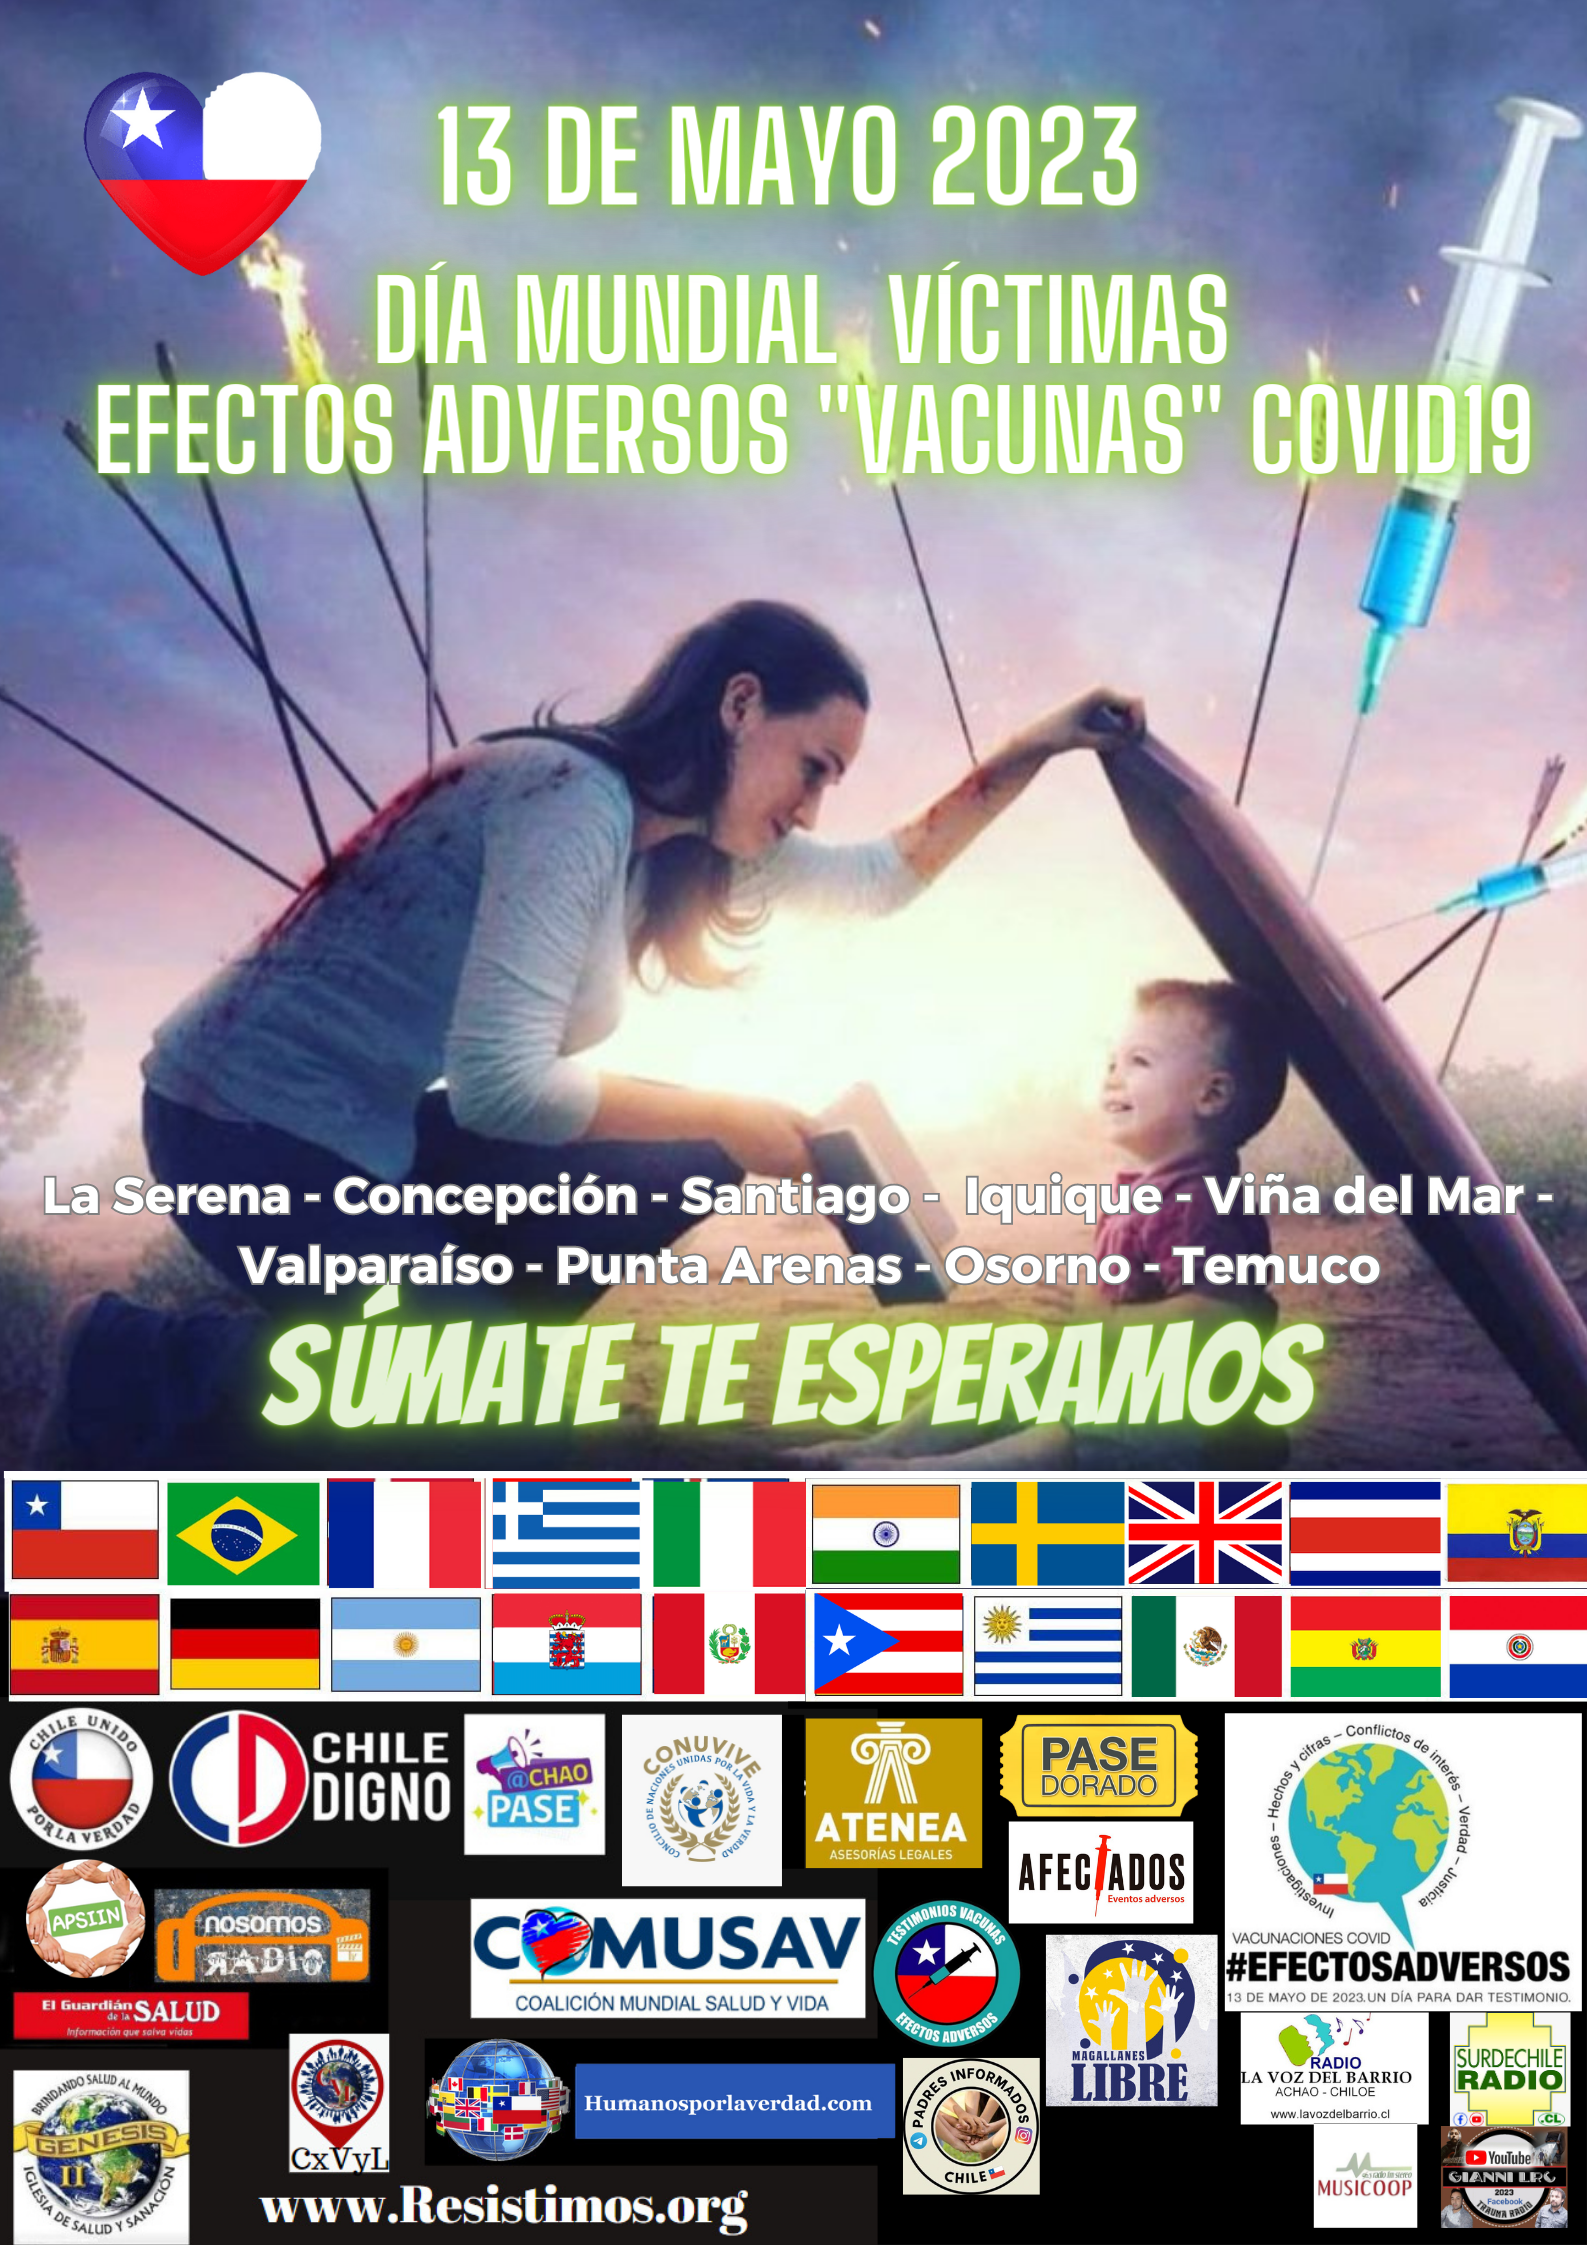 Día mundial de los efectos adversos de inyectables covid19